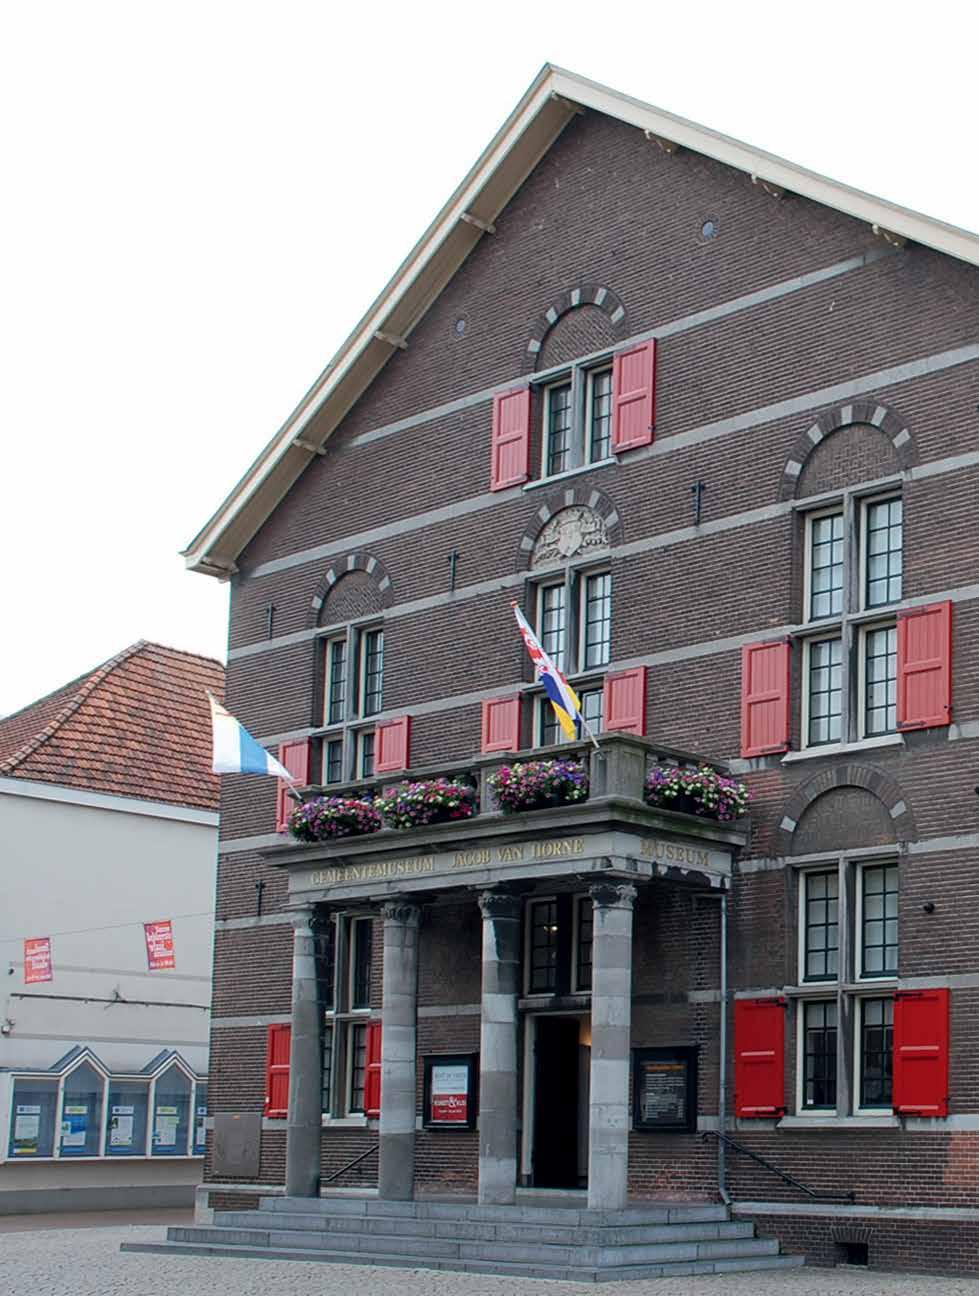 2 Gemeentemuseum Jacob van Horne Markt 7, 6001 EJ Weert Zaterdag 10.00-17.00 uur, Zondag 14.00-17.00 uur Dit oudste stadhuis van Weert heeft een rijke geschiedenis.